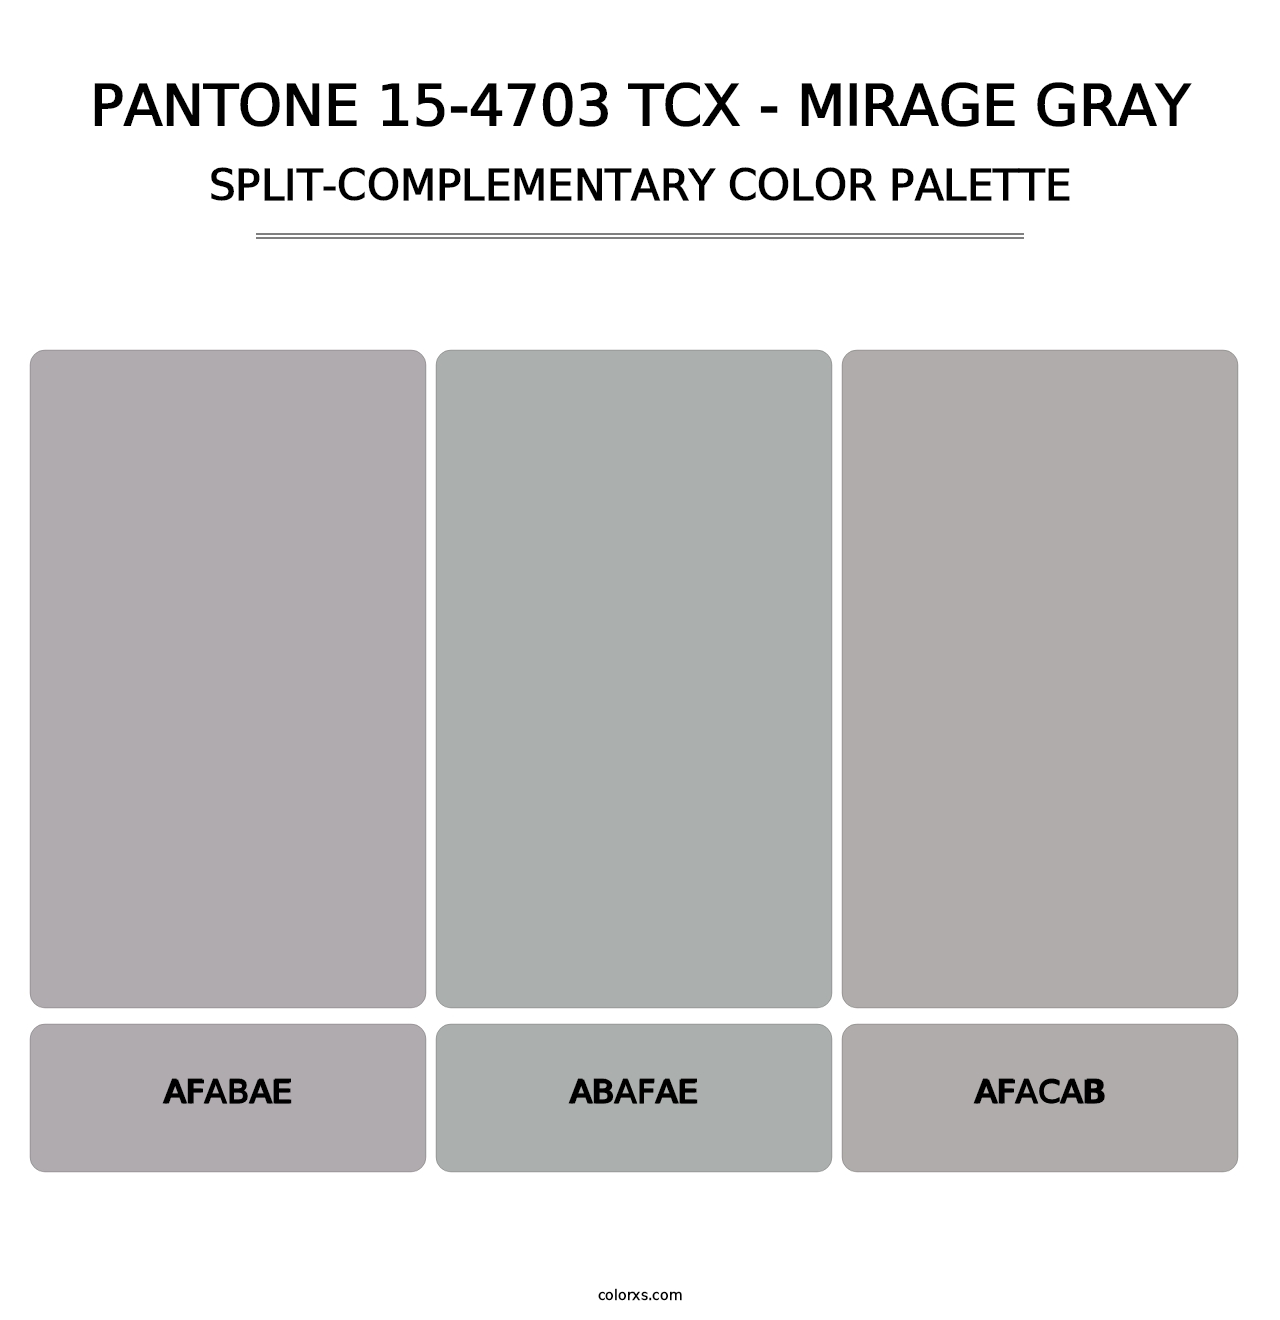 PANTONE 15-4703 TCX - Mirage Gray - Split-Complementary Color Palette